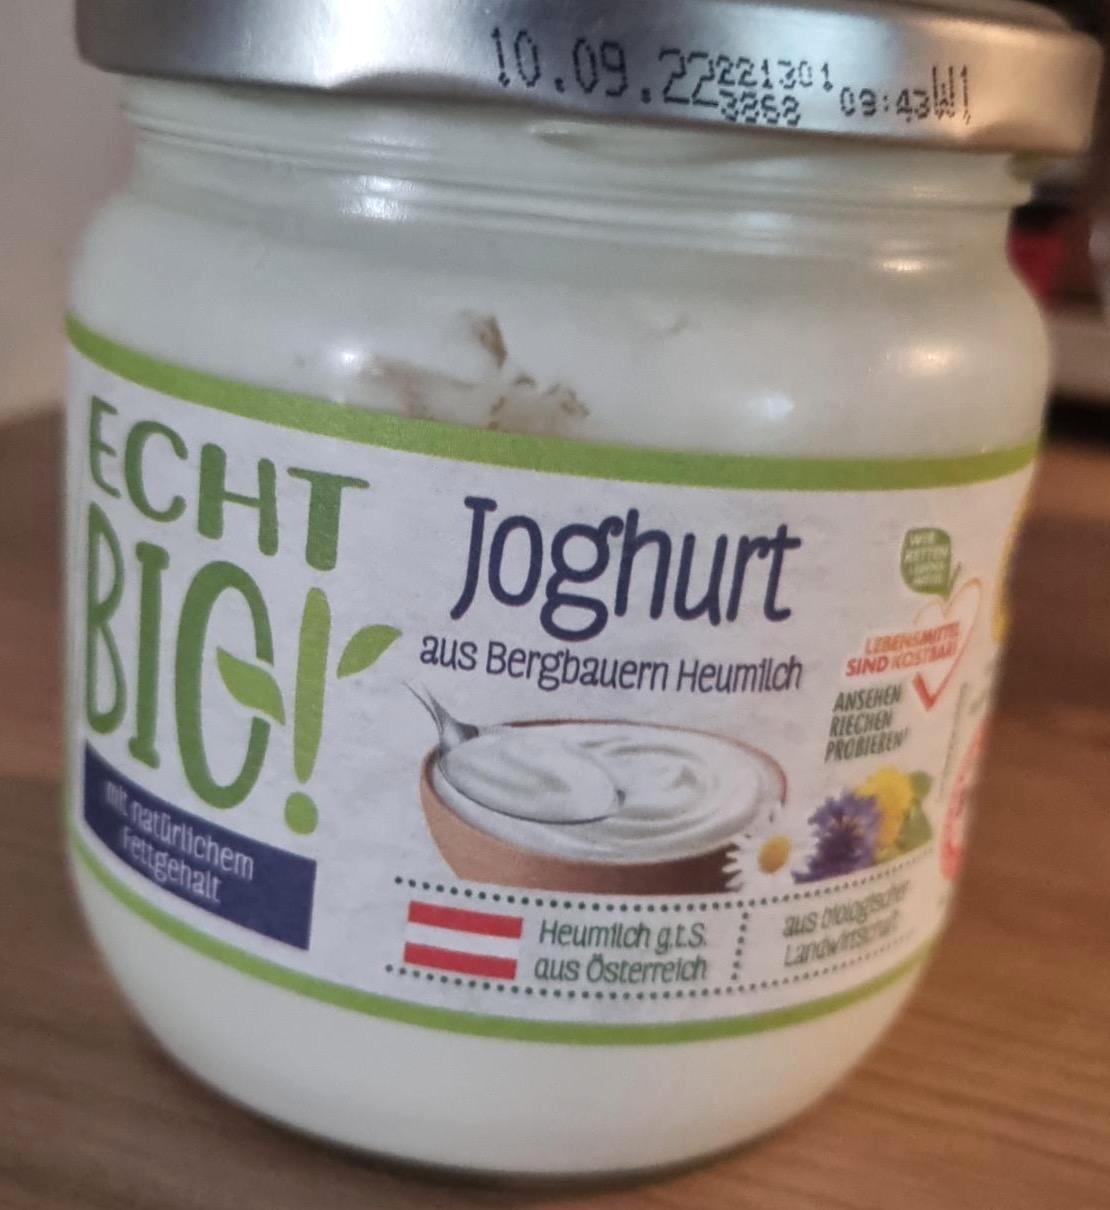 Képek - Joghurt aus Bergbauern heumilch Echt Bio!